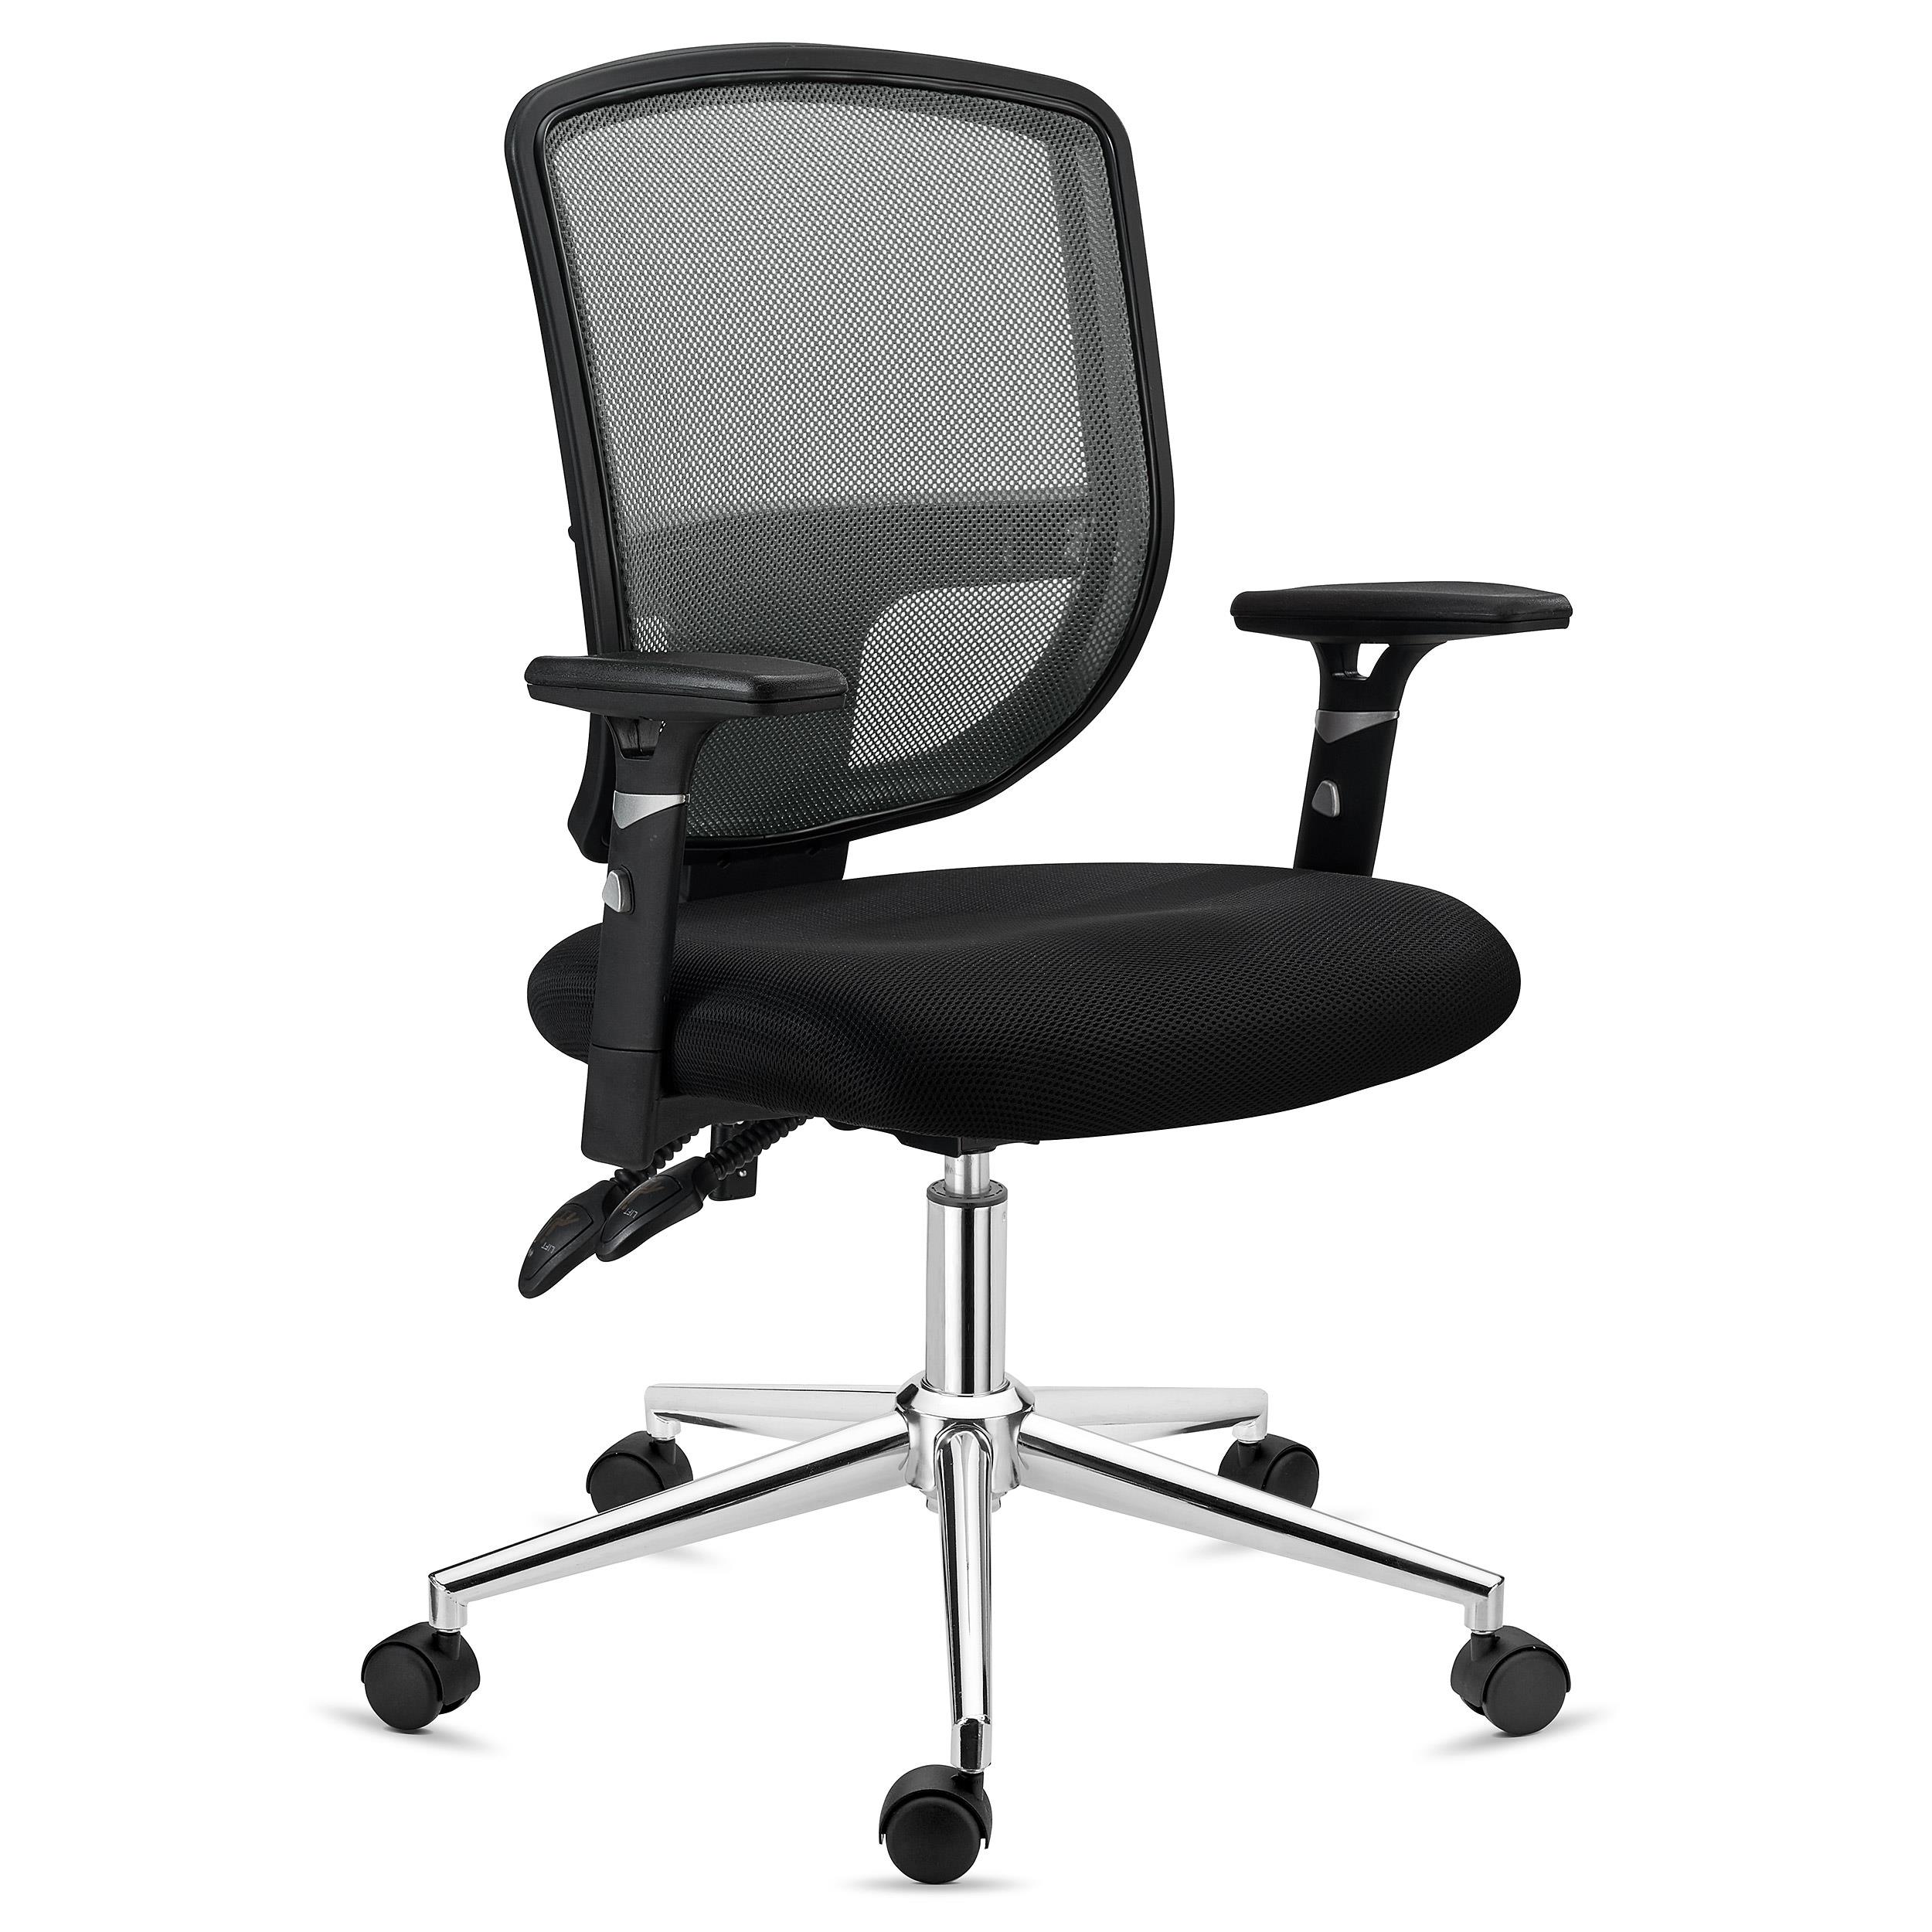 Bürostuhl DINAMIC, für die 8h-Nutzung, verstellbare Rückenlehne, bequem und robust, Farbe Grau